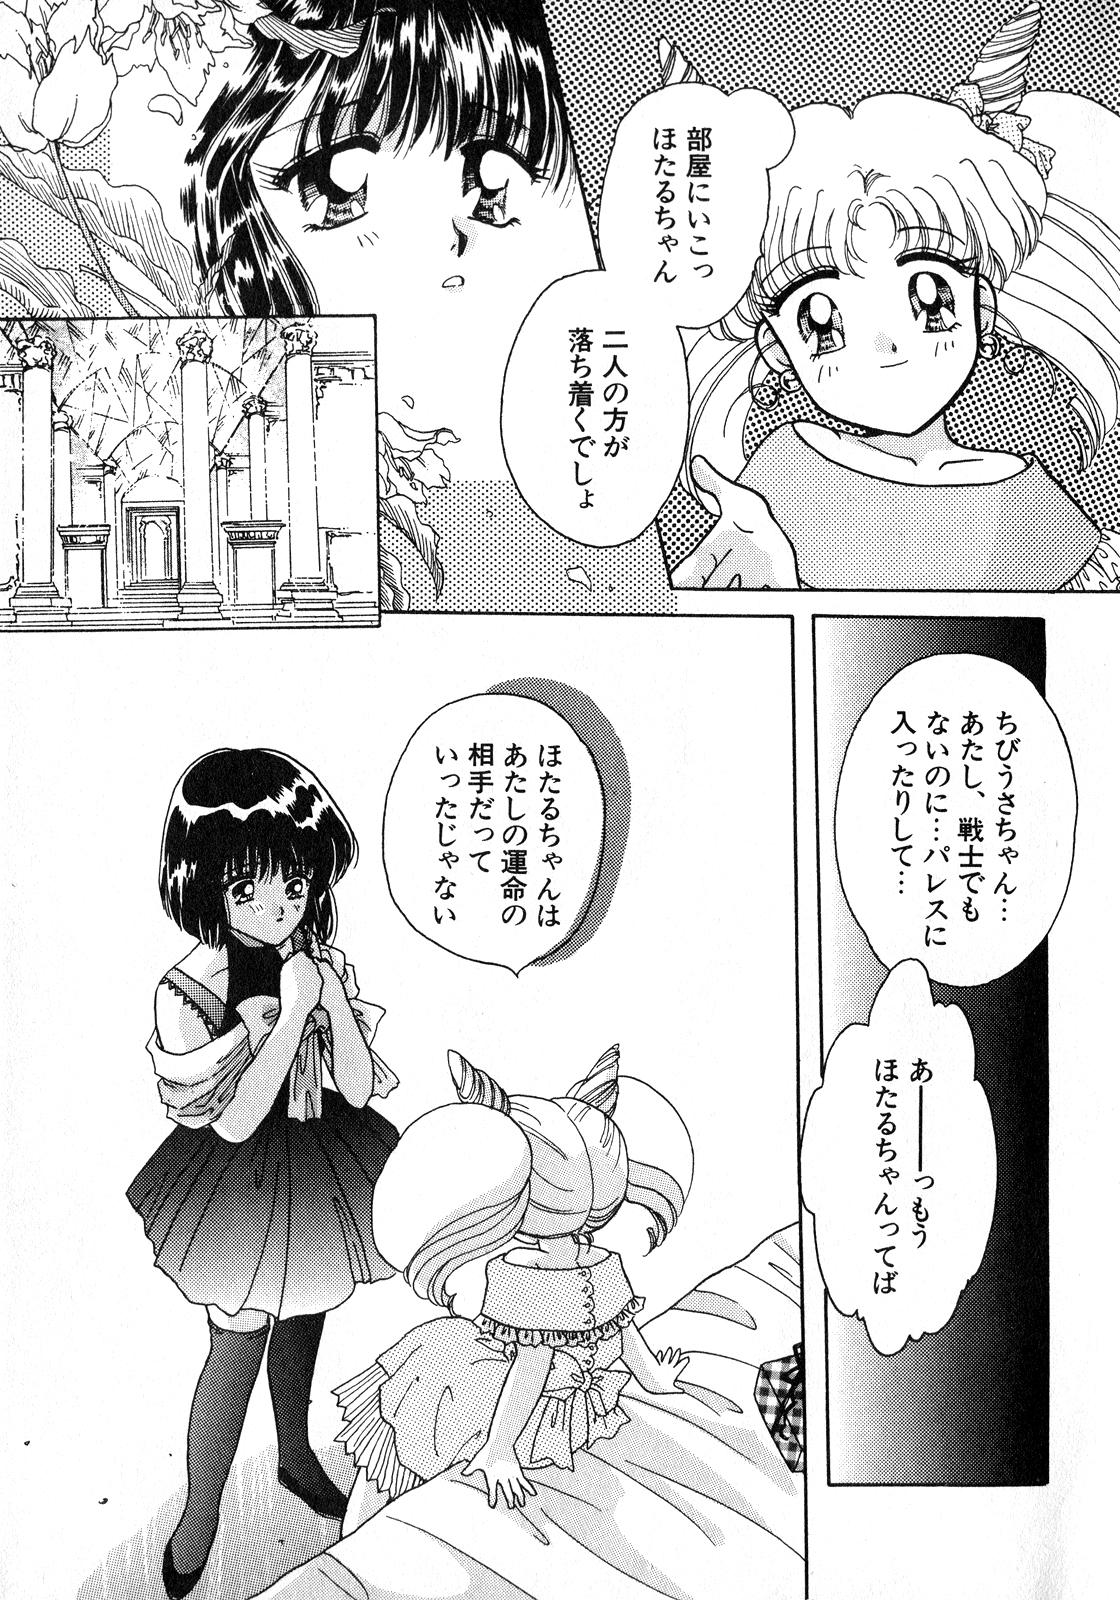 Boquete Lunatic Party 8 - Sailor moon Whores - Page 6